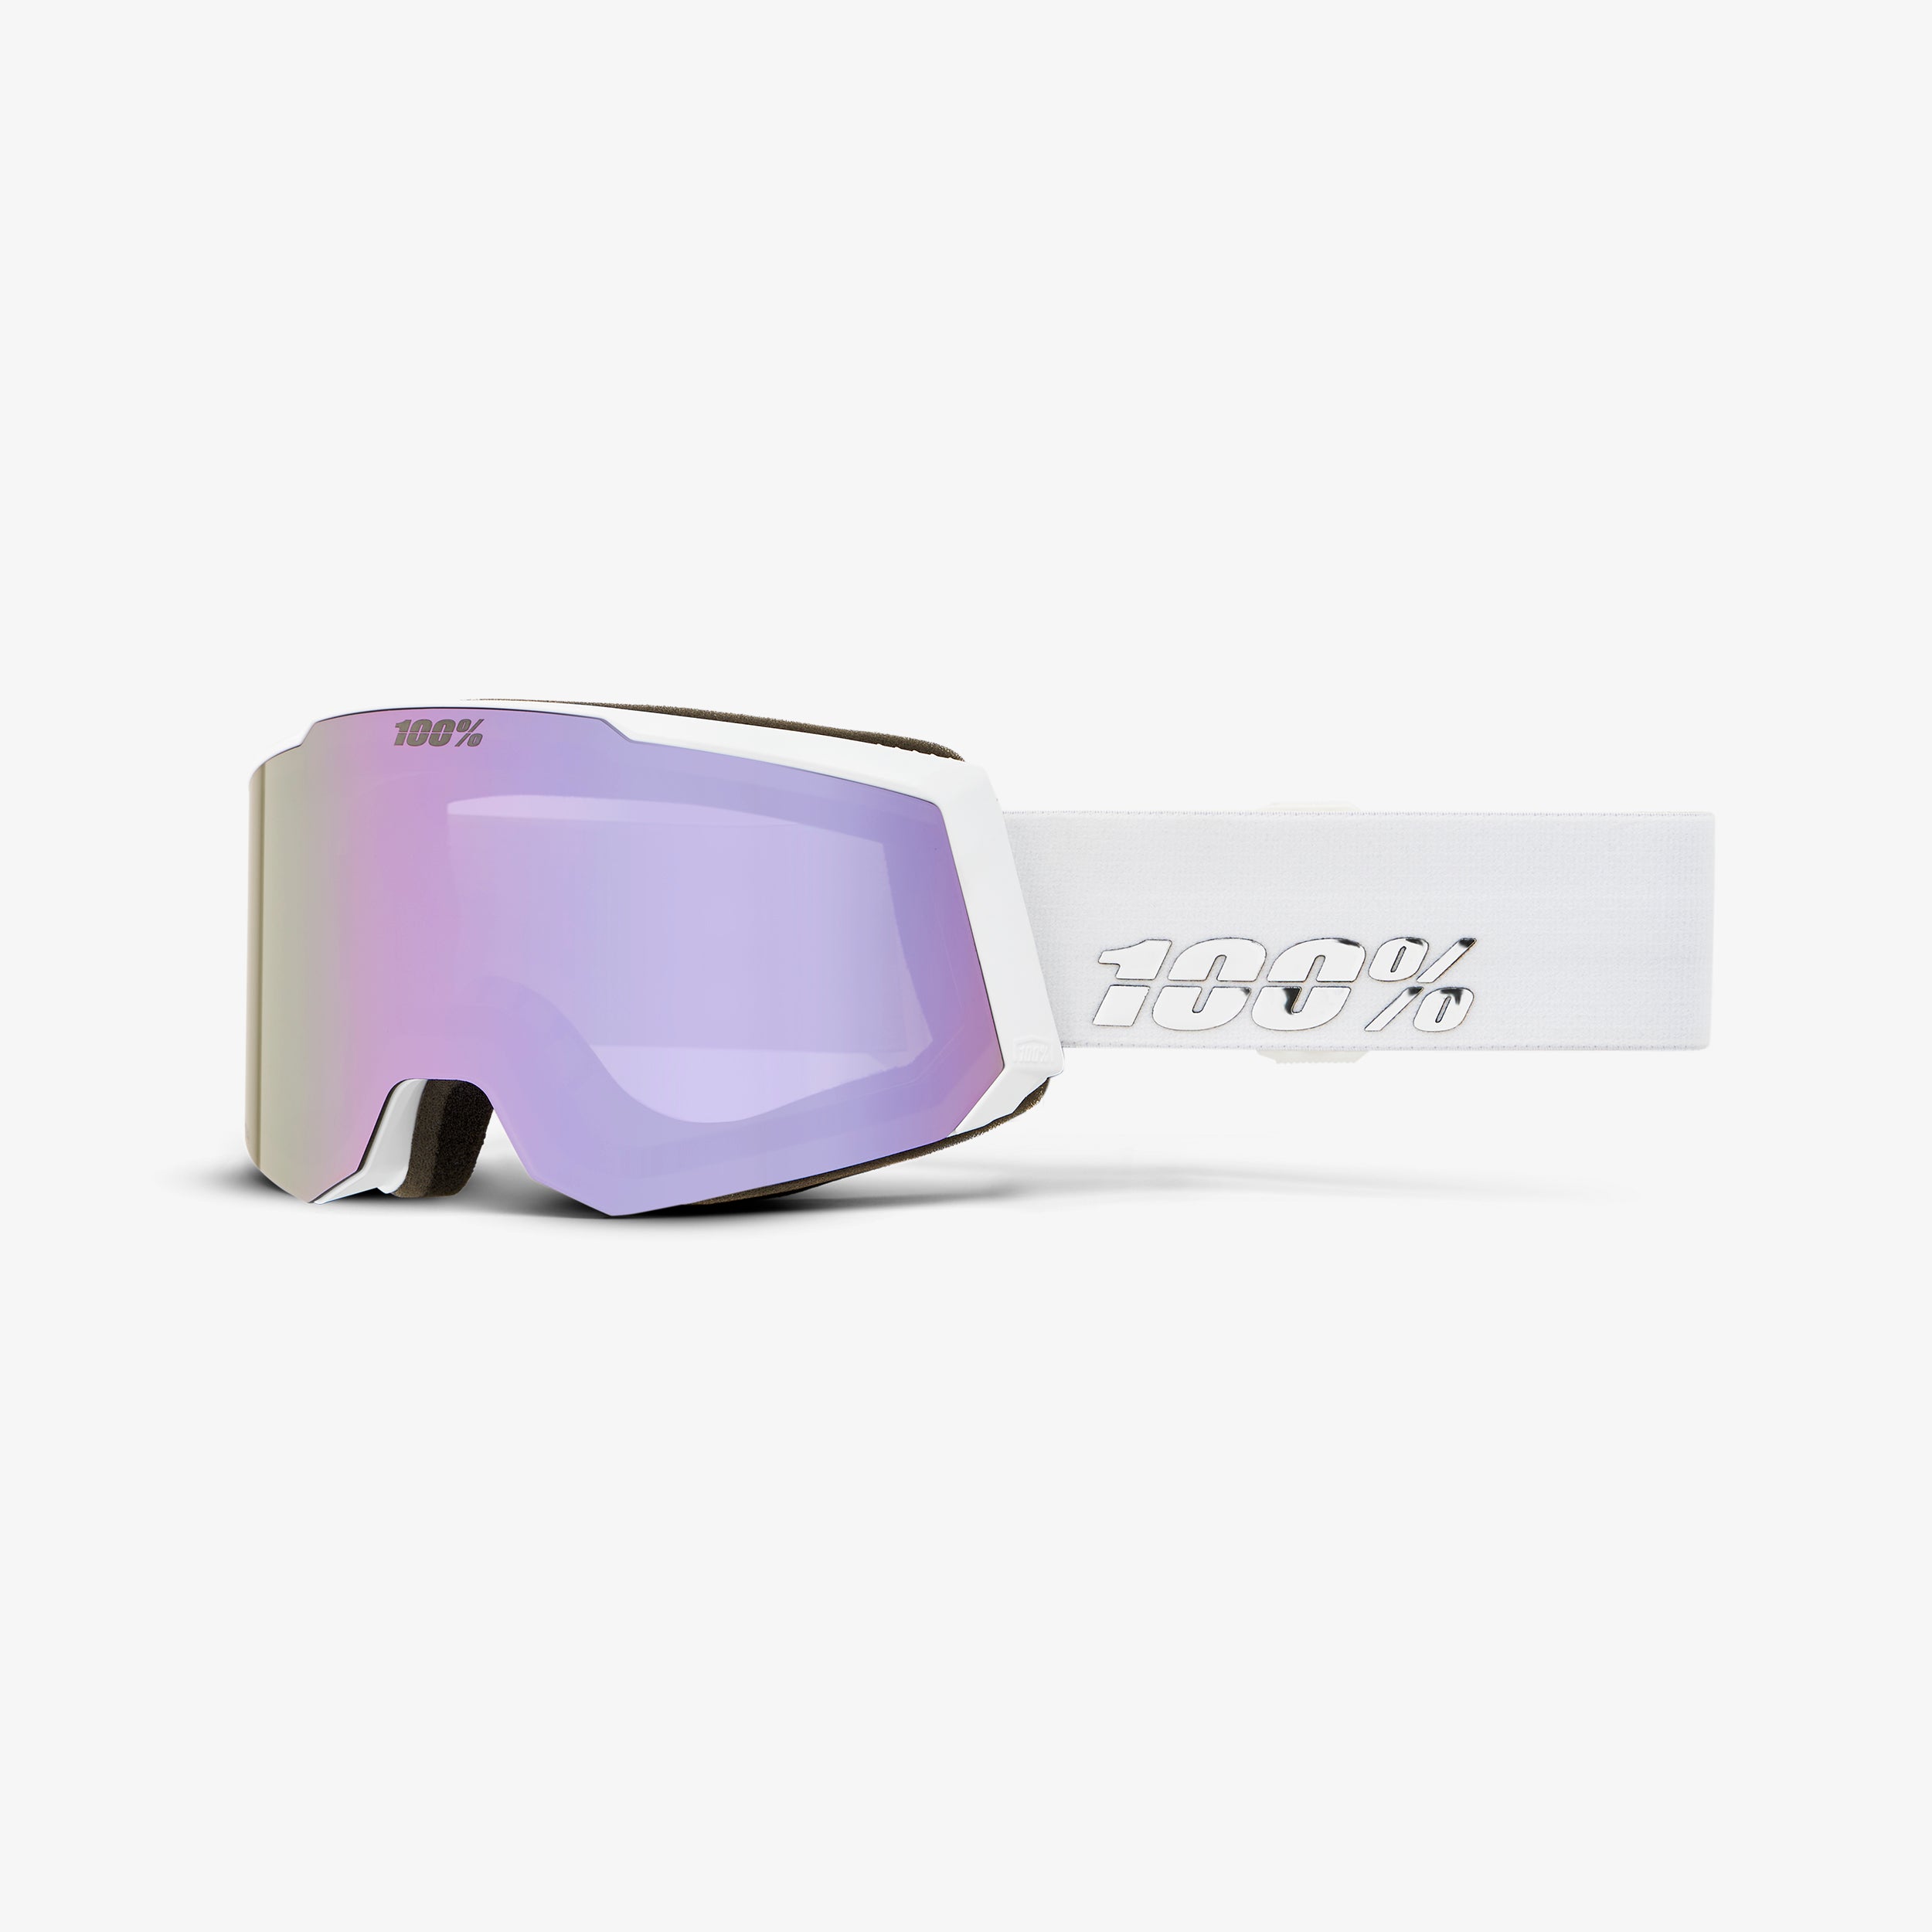 SNOWCRAFT S AF HiPER Goggle White/Lavender - Mirror Lavender Lens